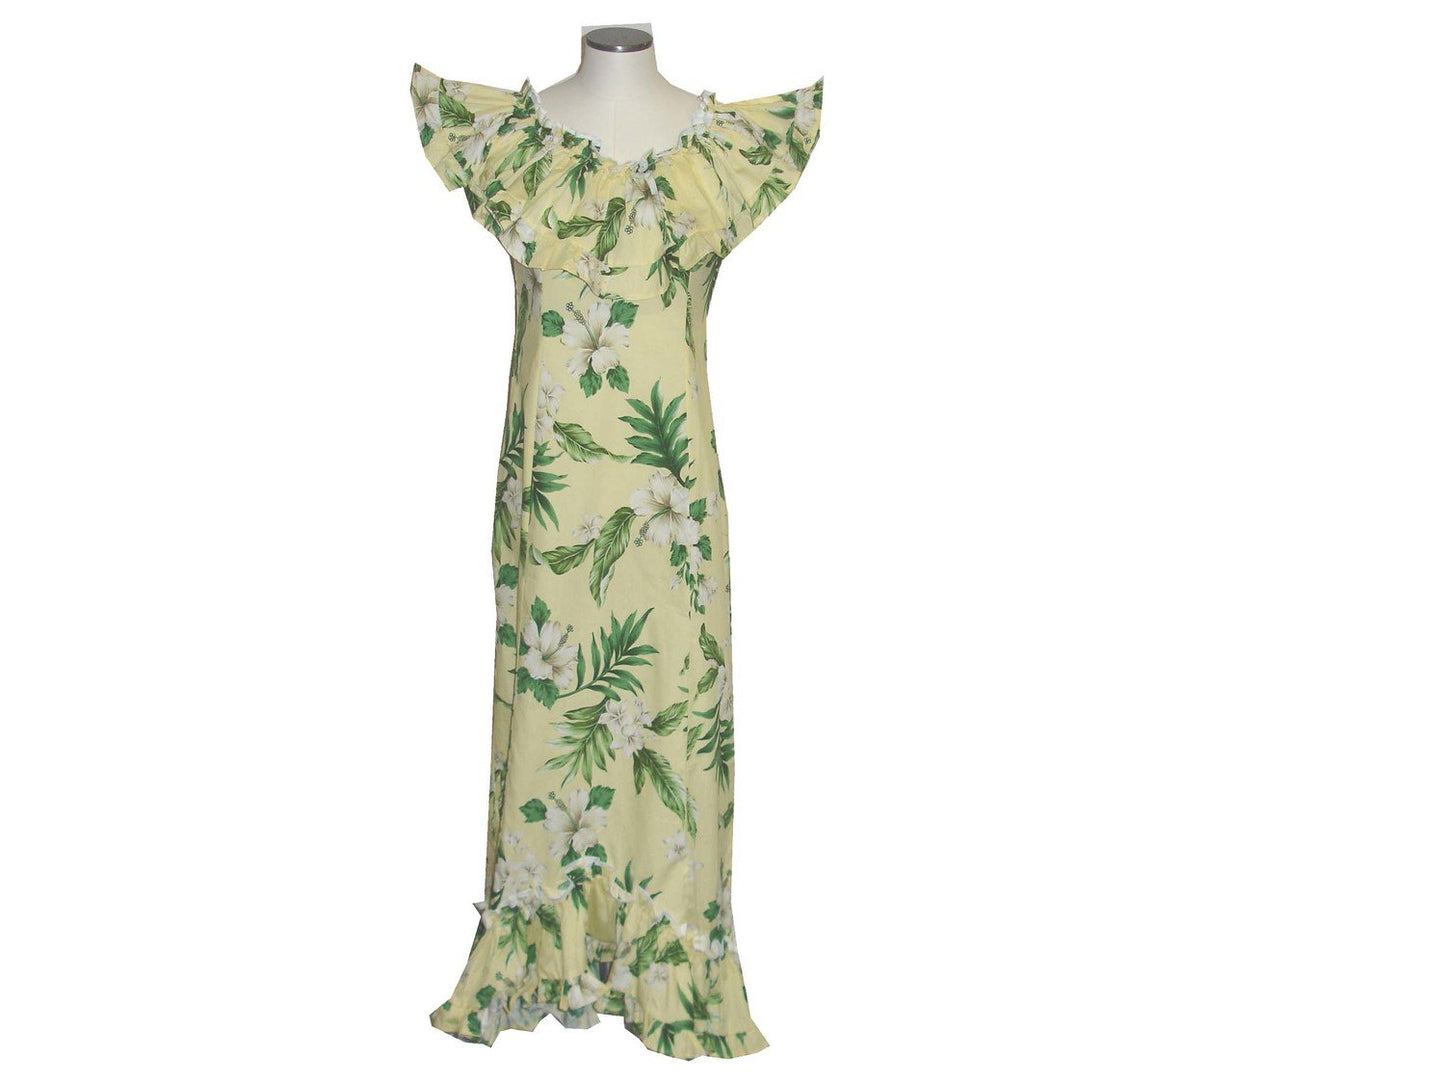 Hibiscus Long Cotton Hawaiian Muumuu Dancing Dress Made in Hawaii